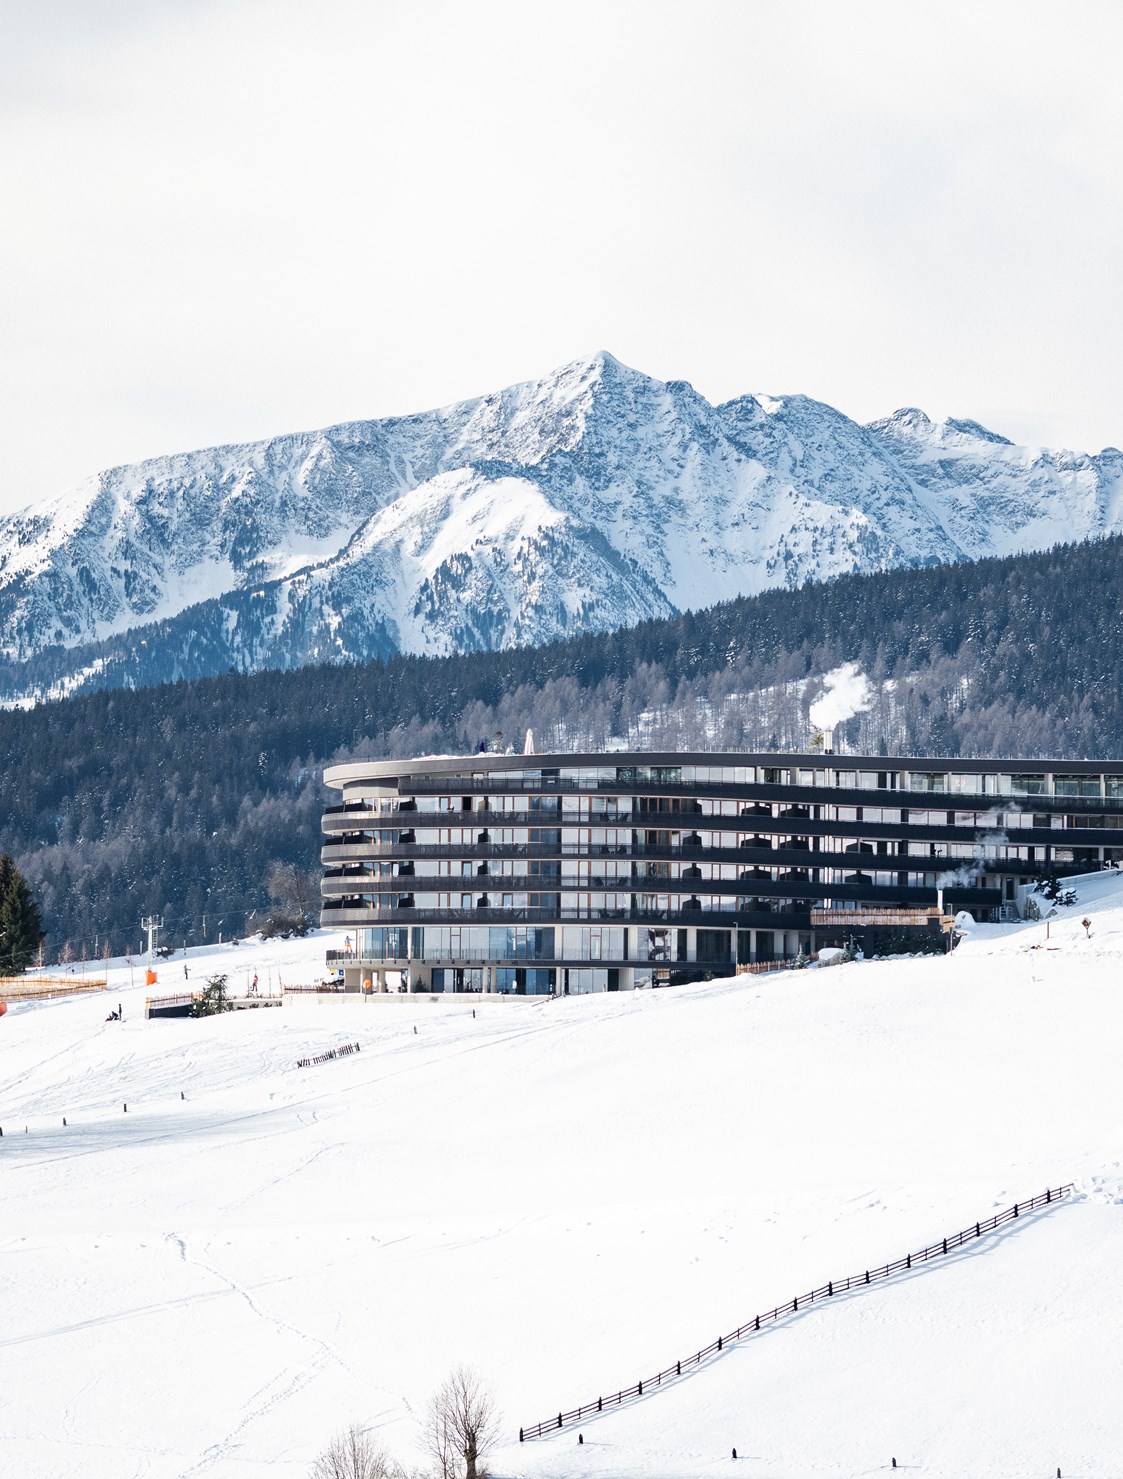 Familienhotel: Man munkelt, dass es in Südtirol einen besonderen Ort gibt: ein ganz und gar magisches Fleckchen Erde, mit einem neuen 5-Sterne-Familienhotel in Meransen in Südtirol. - Familienhotel Familiamus